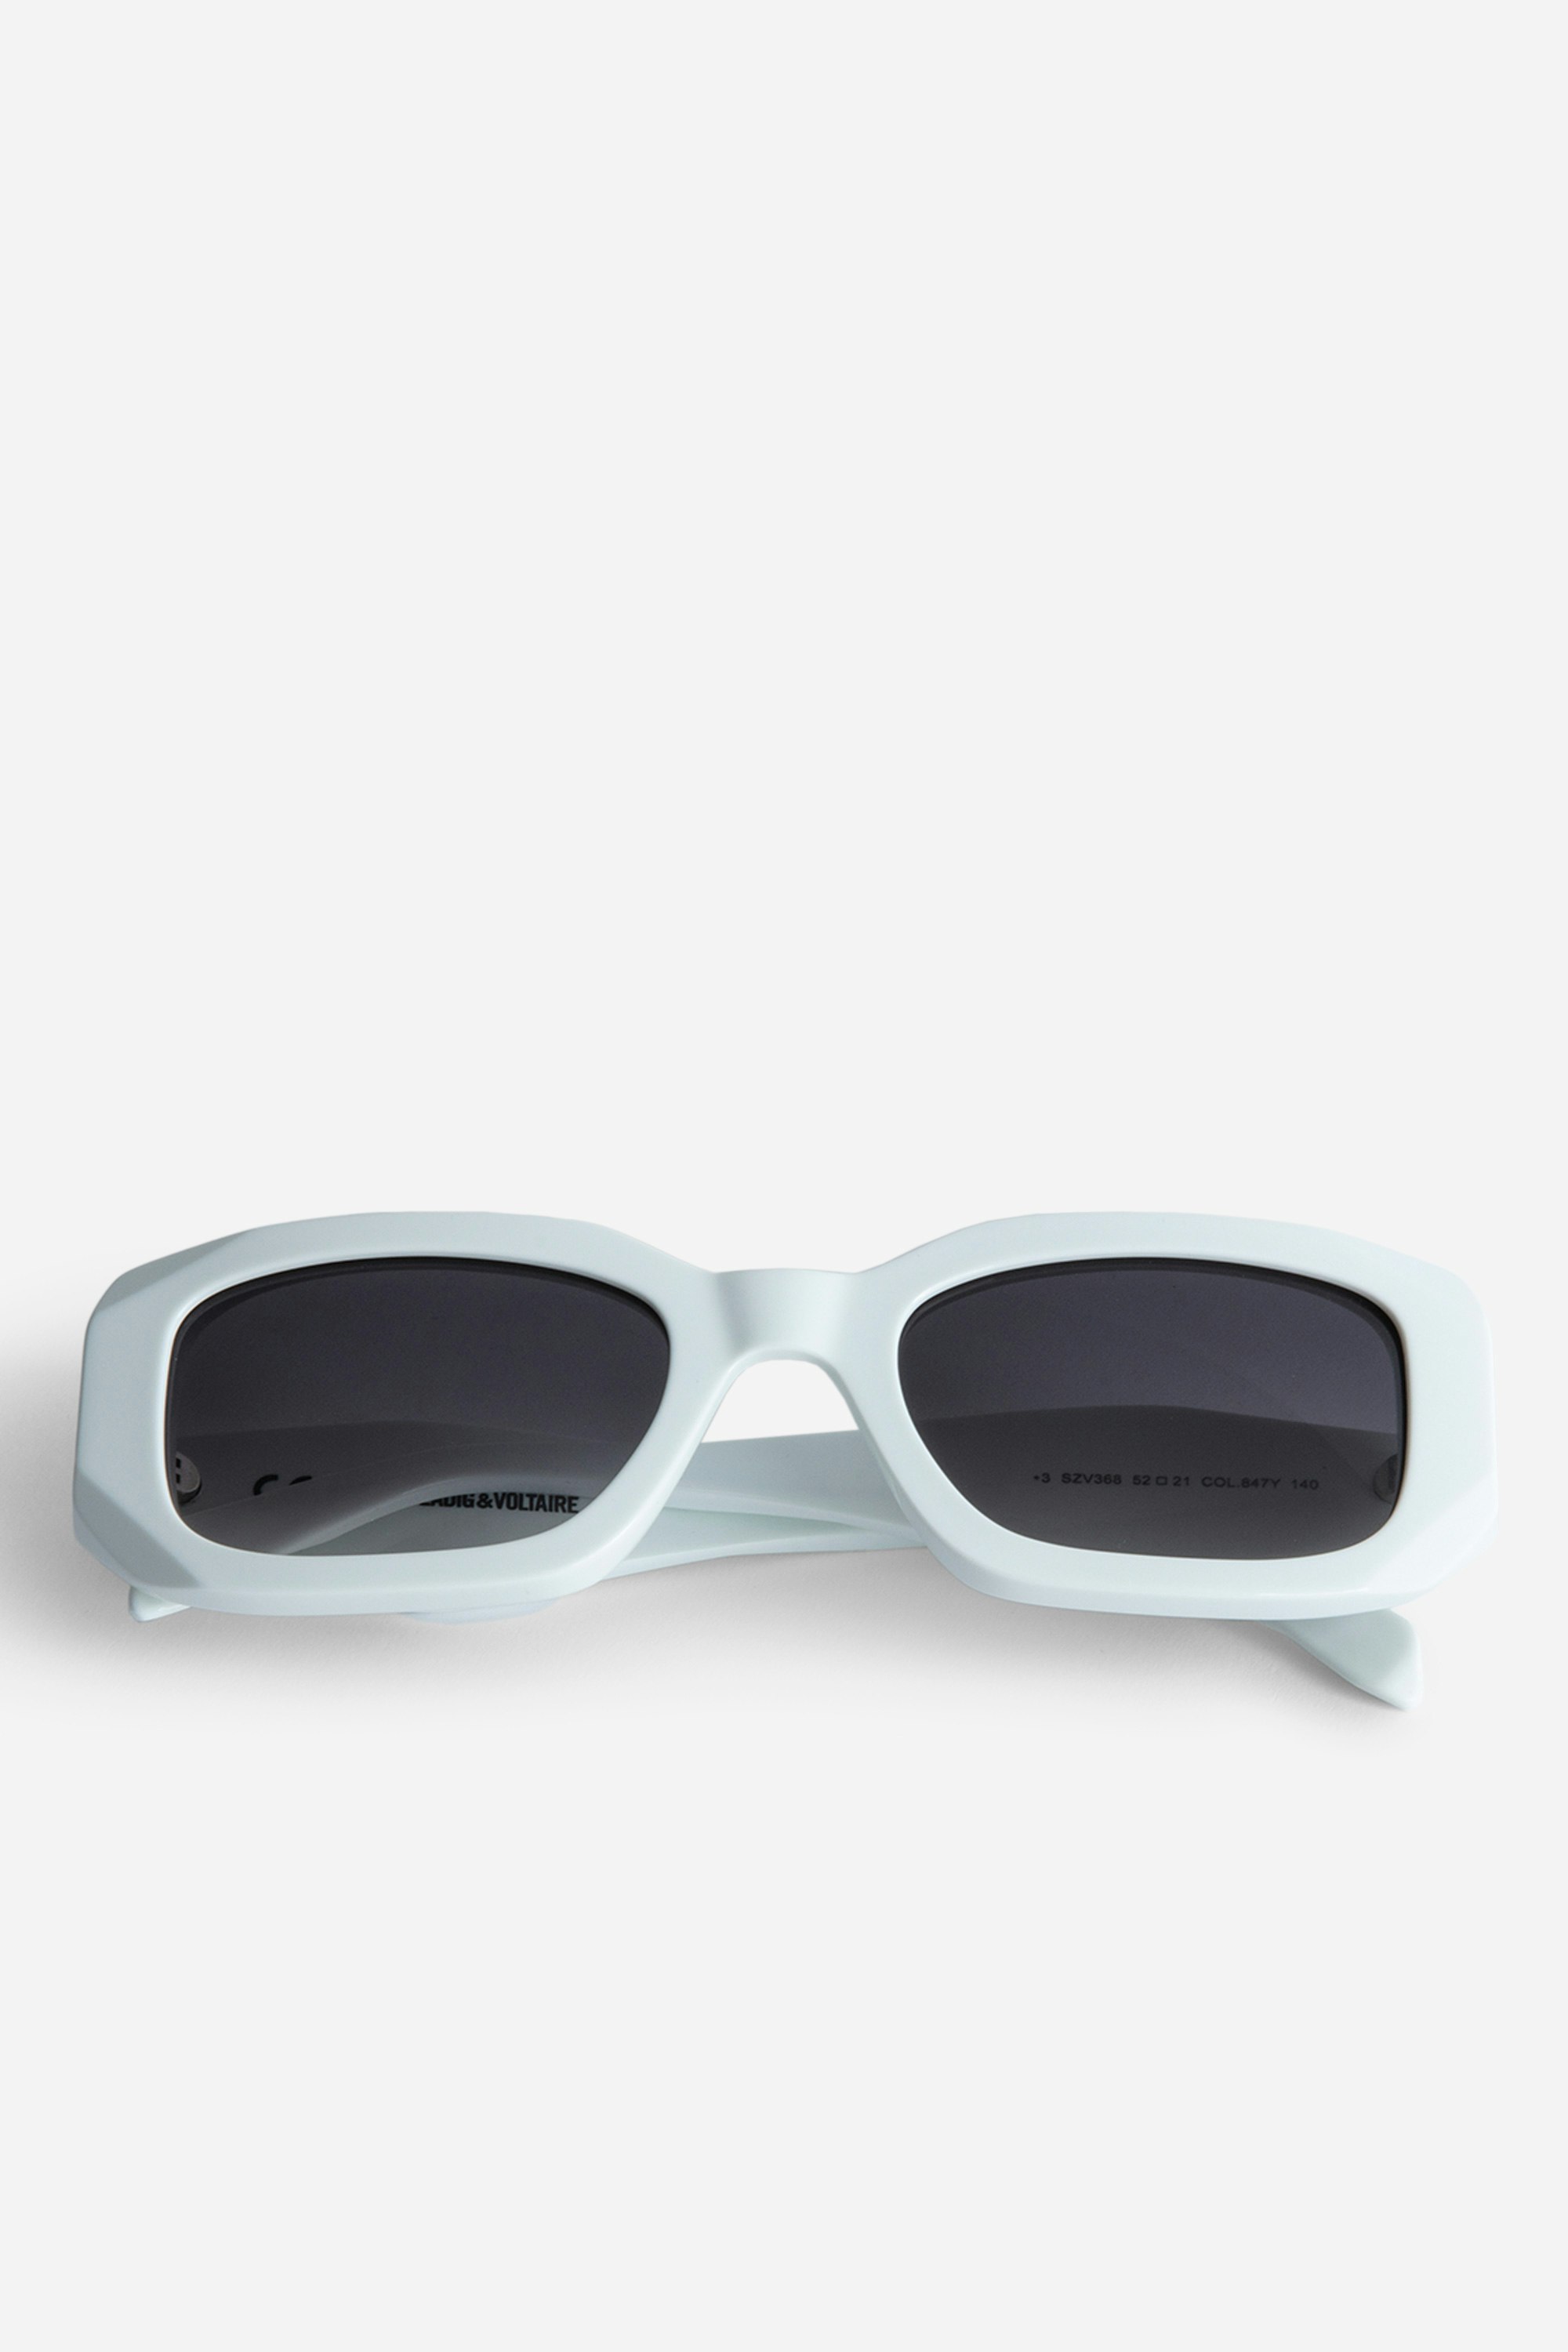 Sonnenbrille ZV23H3 - Weiße, rechteckige Unisex-Sonnenbrille mit Flügeln auf den destrukturierten Bügeln.